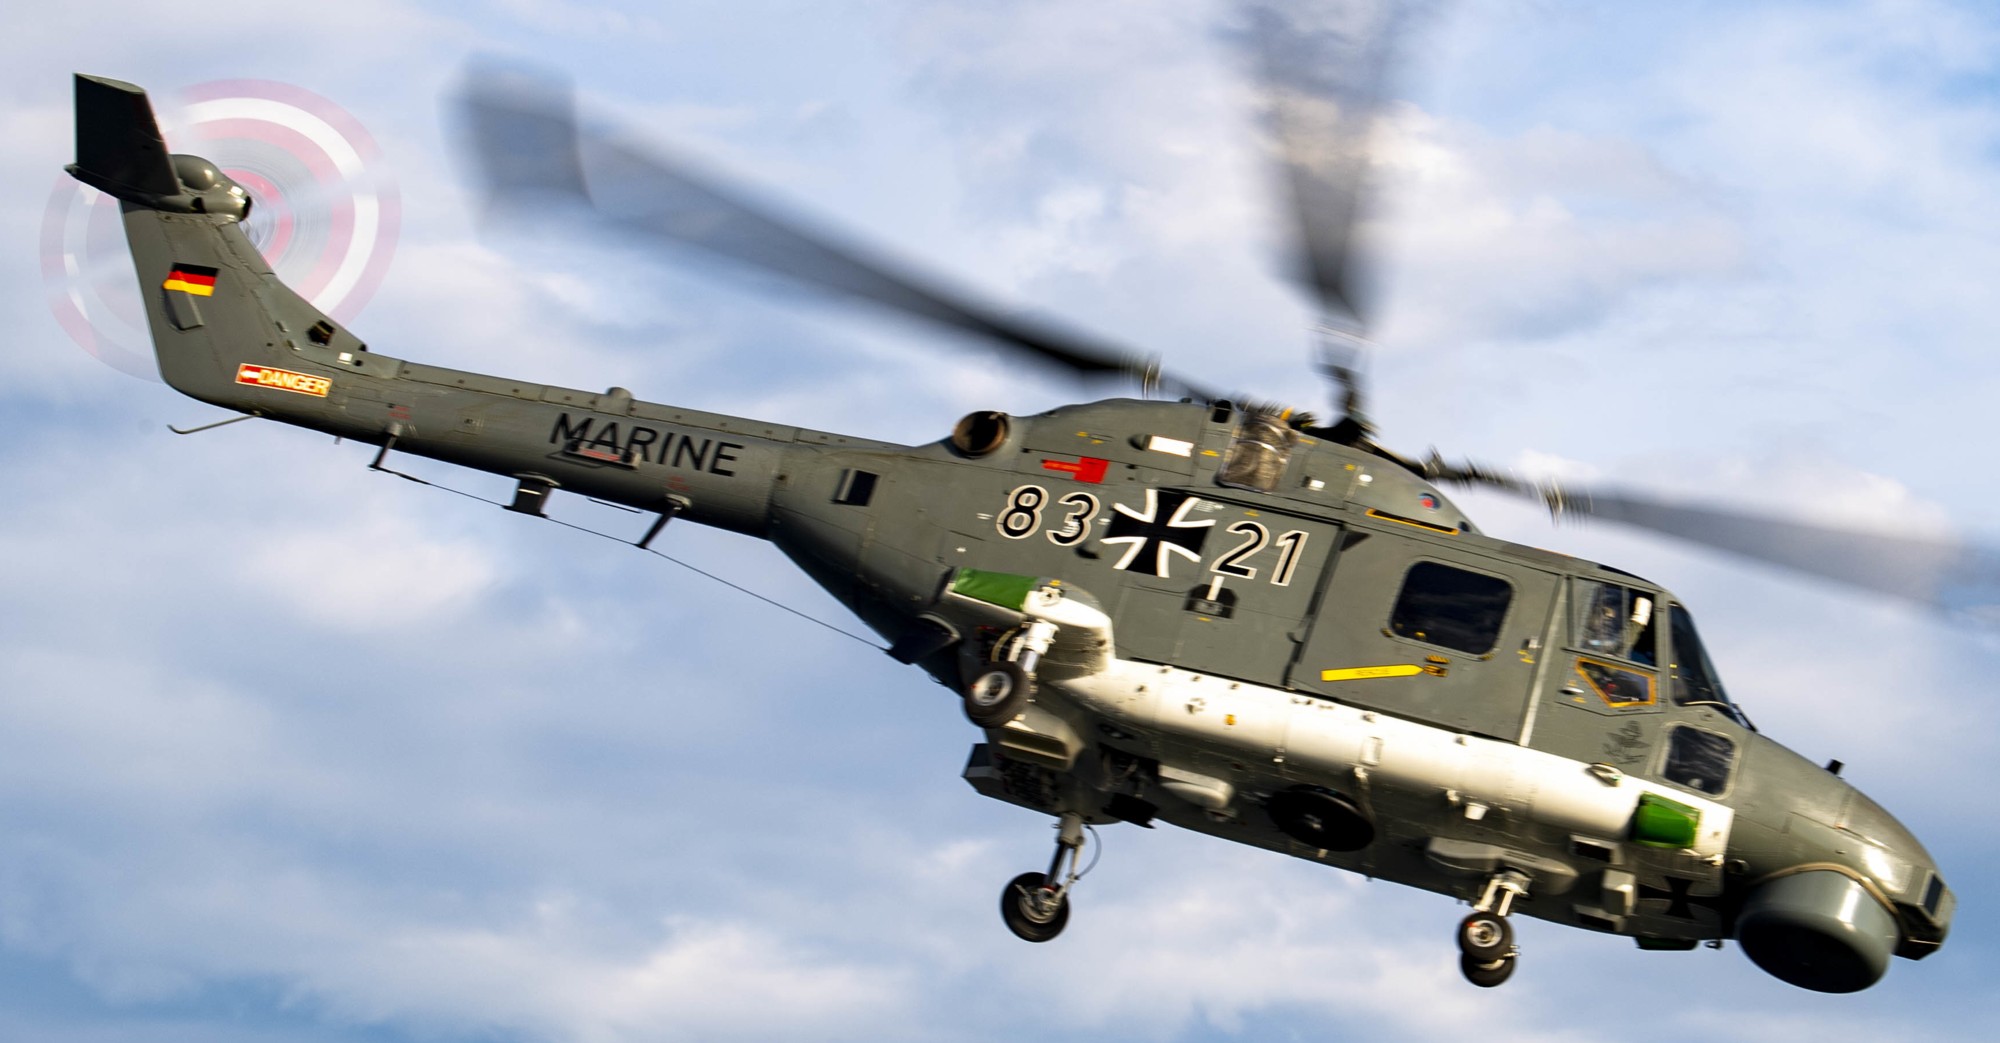 sea lynx mk.88a westland naval helicopter german navy deutsche marine 108